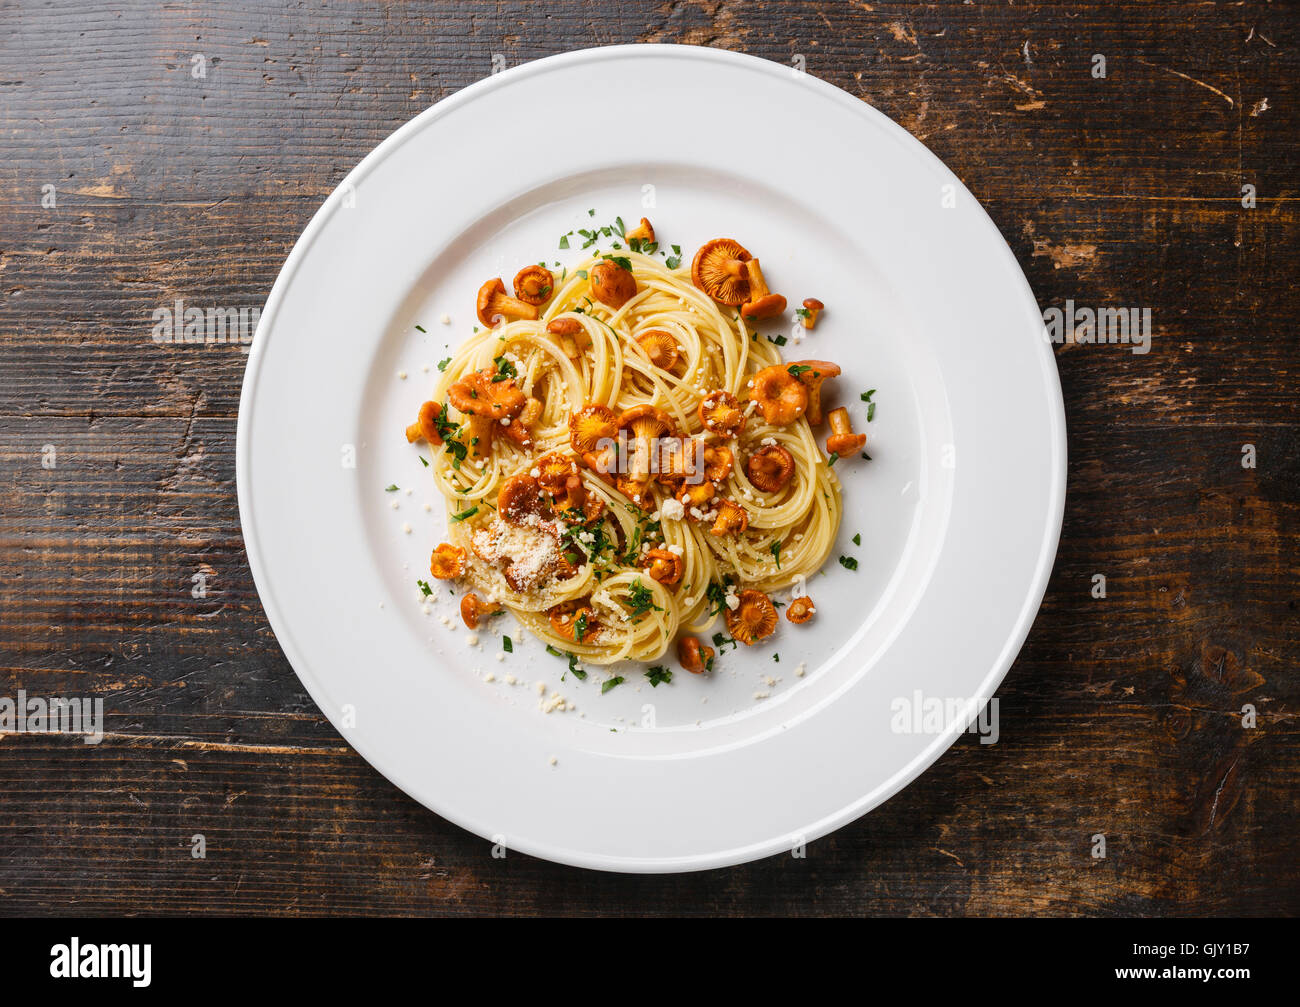 Pasta spaghetti con bosco selvatico funghi Chanterelle sulla piastra bianca sul tavolo di legno Foto Stock